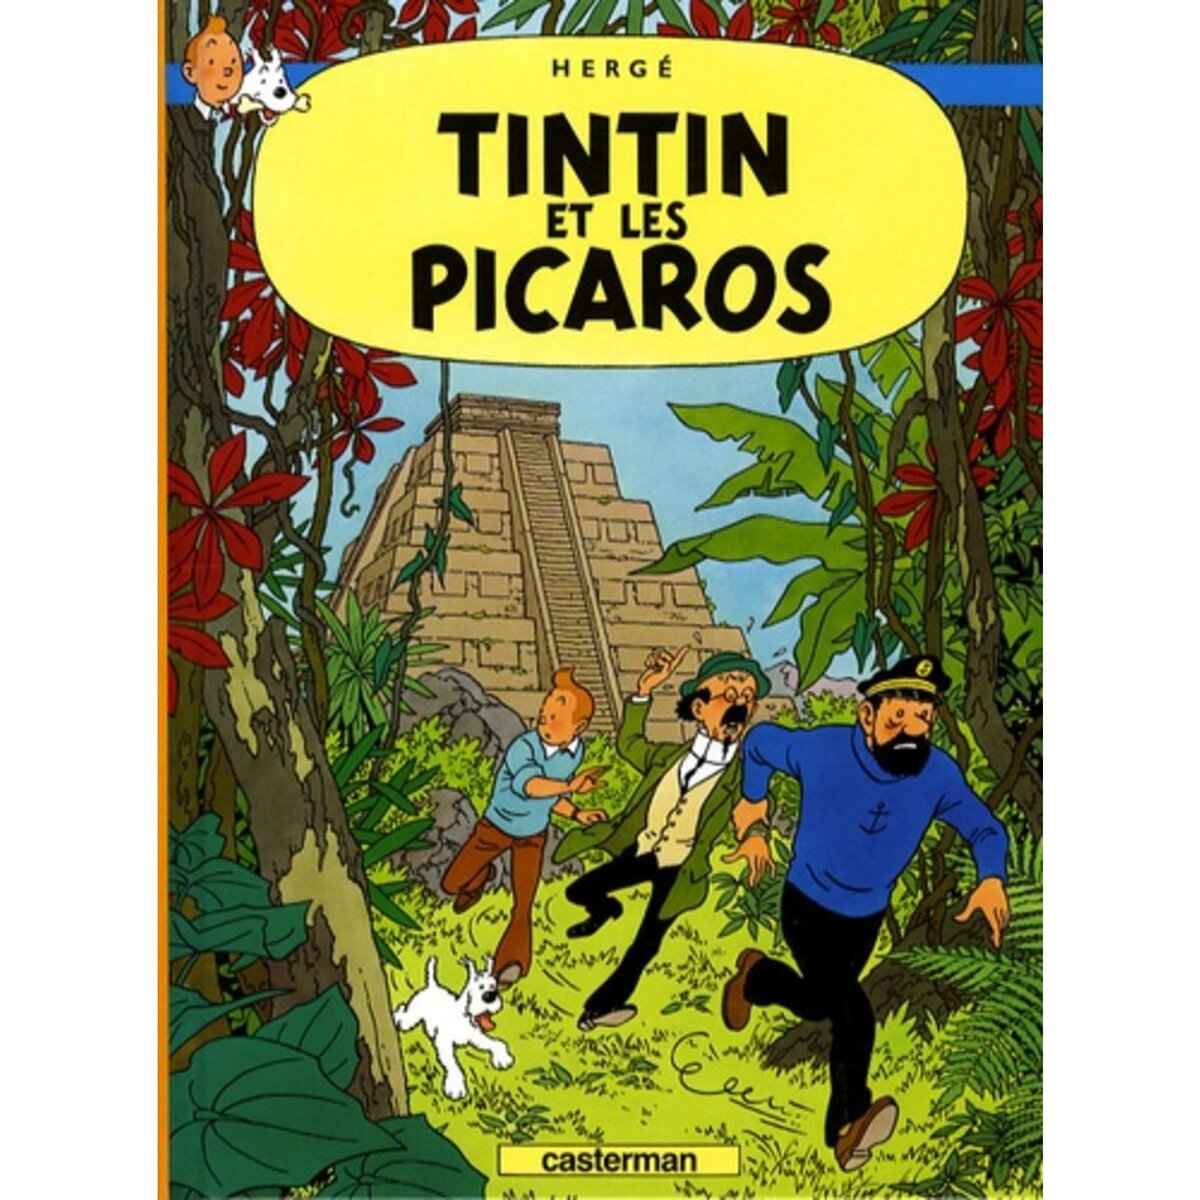  LES AVENTURES DE TINTIN TOME 23 : TINTIN ET LES PICAROS. MINI-ALBUM, Hergé